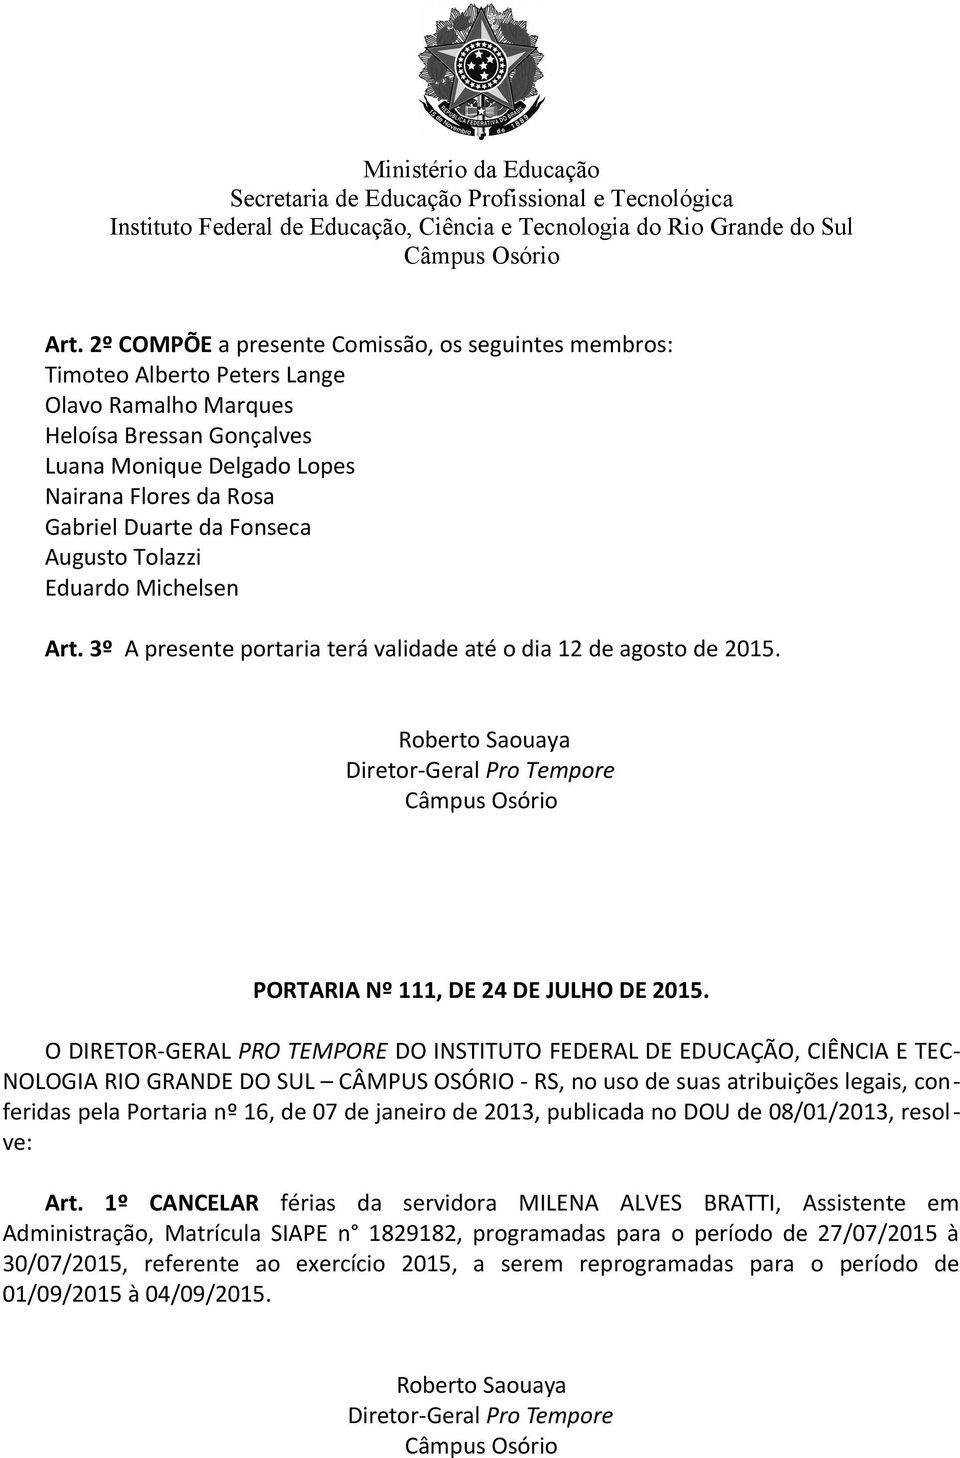 TEC- NOLOGIA RIO GRANDE DO SUL CÂMPUS OSÓRIO - RS, no uso de suas atribuições legais, conferidas pela Portaria nº 16, de 07 de janeiro de 2013, publicada no DOU de 08/01/2013, resolve: Art.